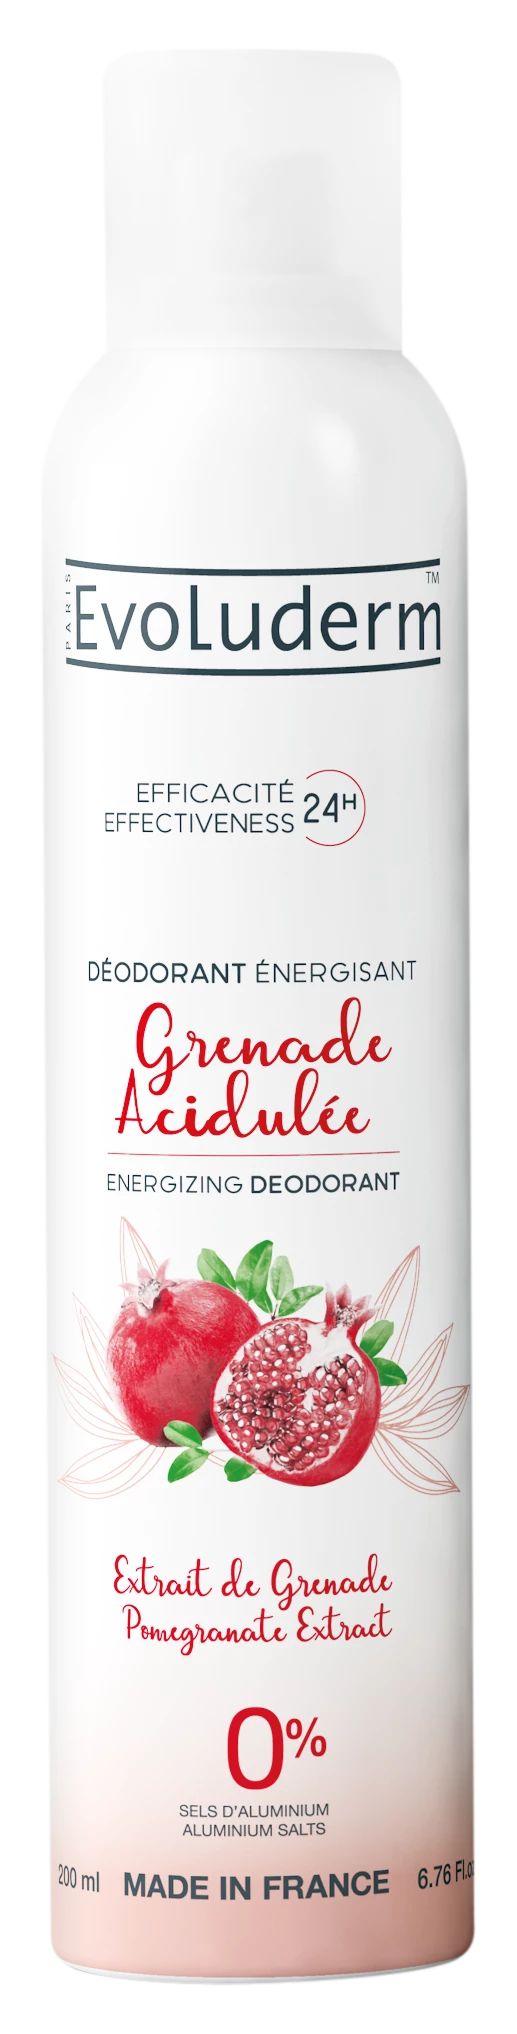 Angesäuerter Genade-Deodorant-Genade-Extrakt, 200 ml - EVOLUDERM